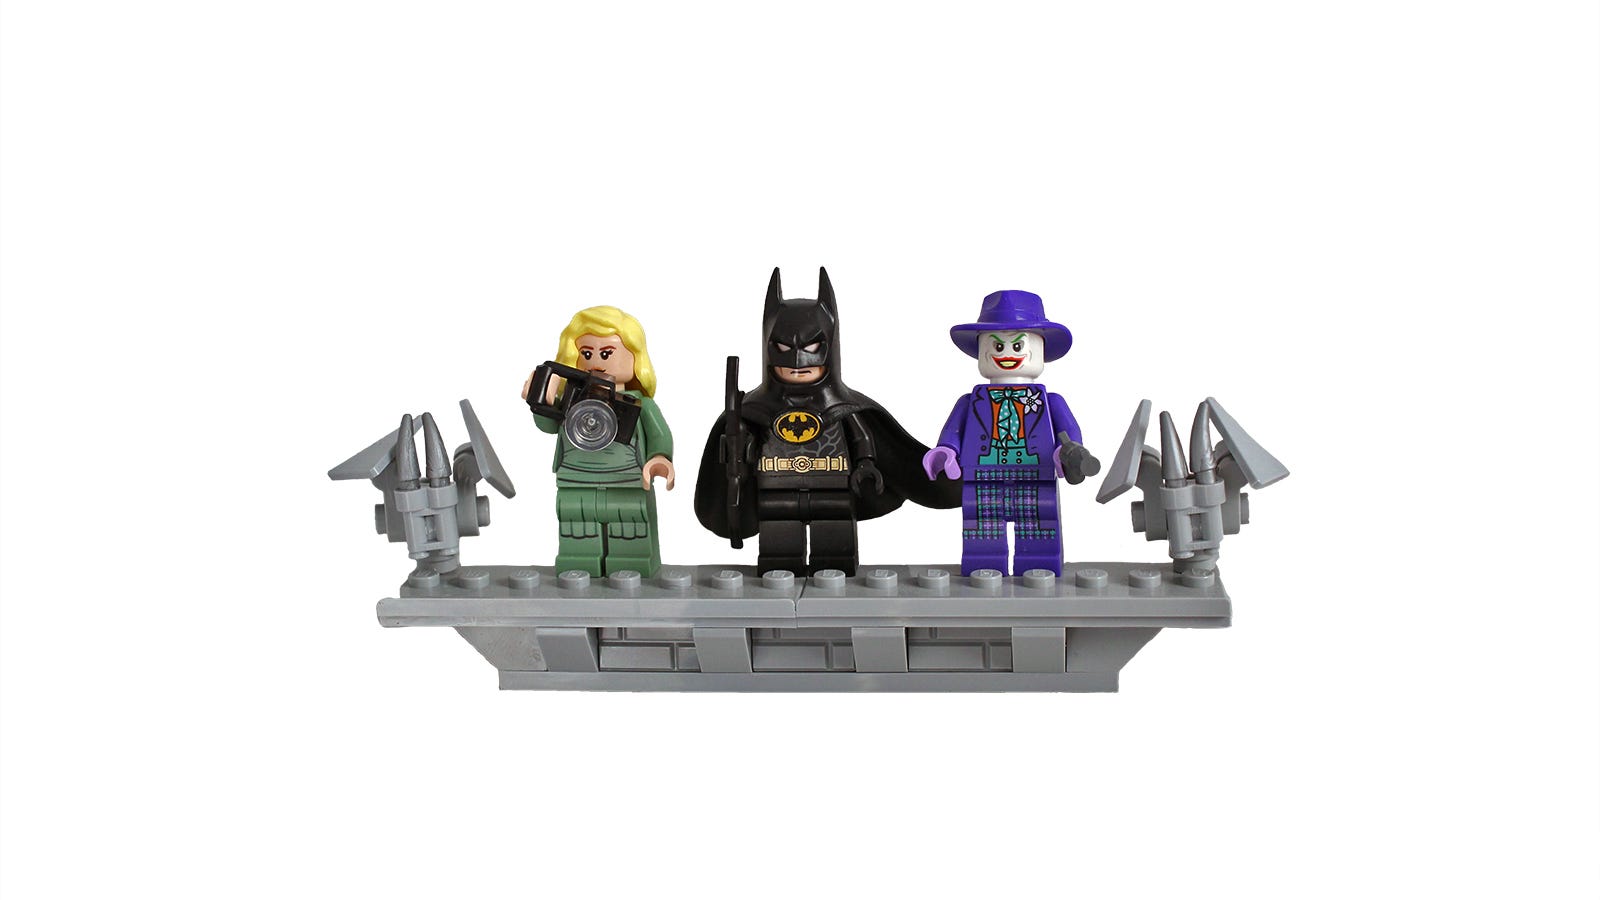 Närbild av Vicky Vale, Batman och Joker i LEGO-form som står bredvid LEGO-gargoyler.